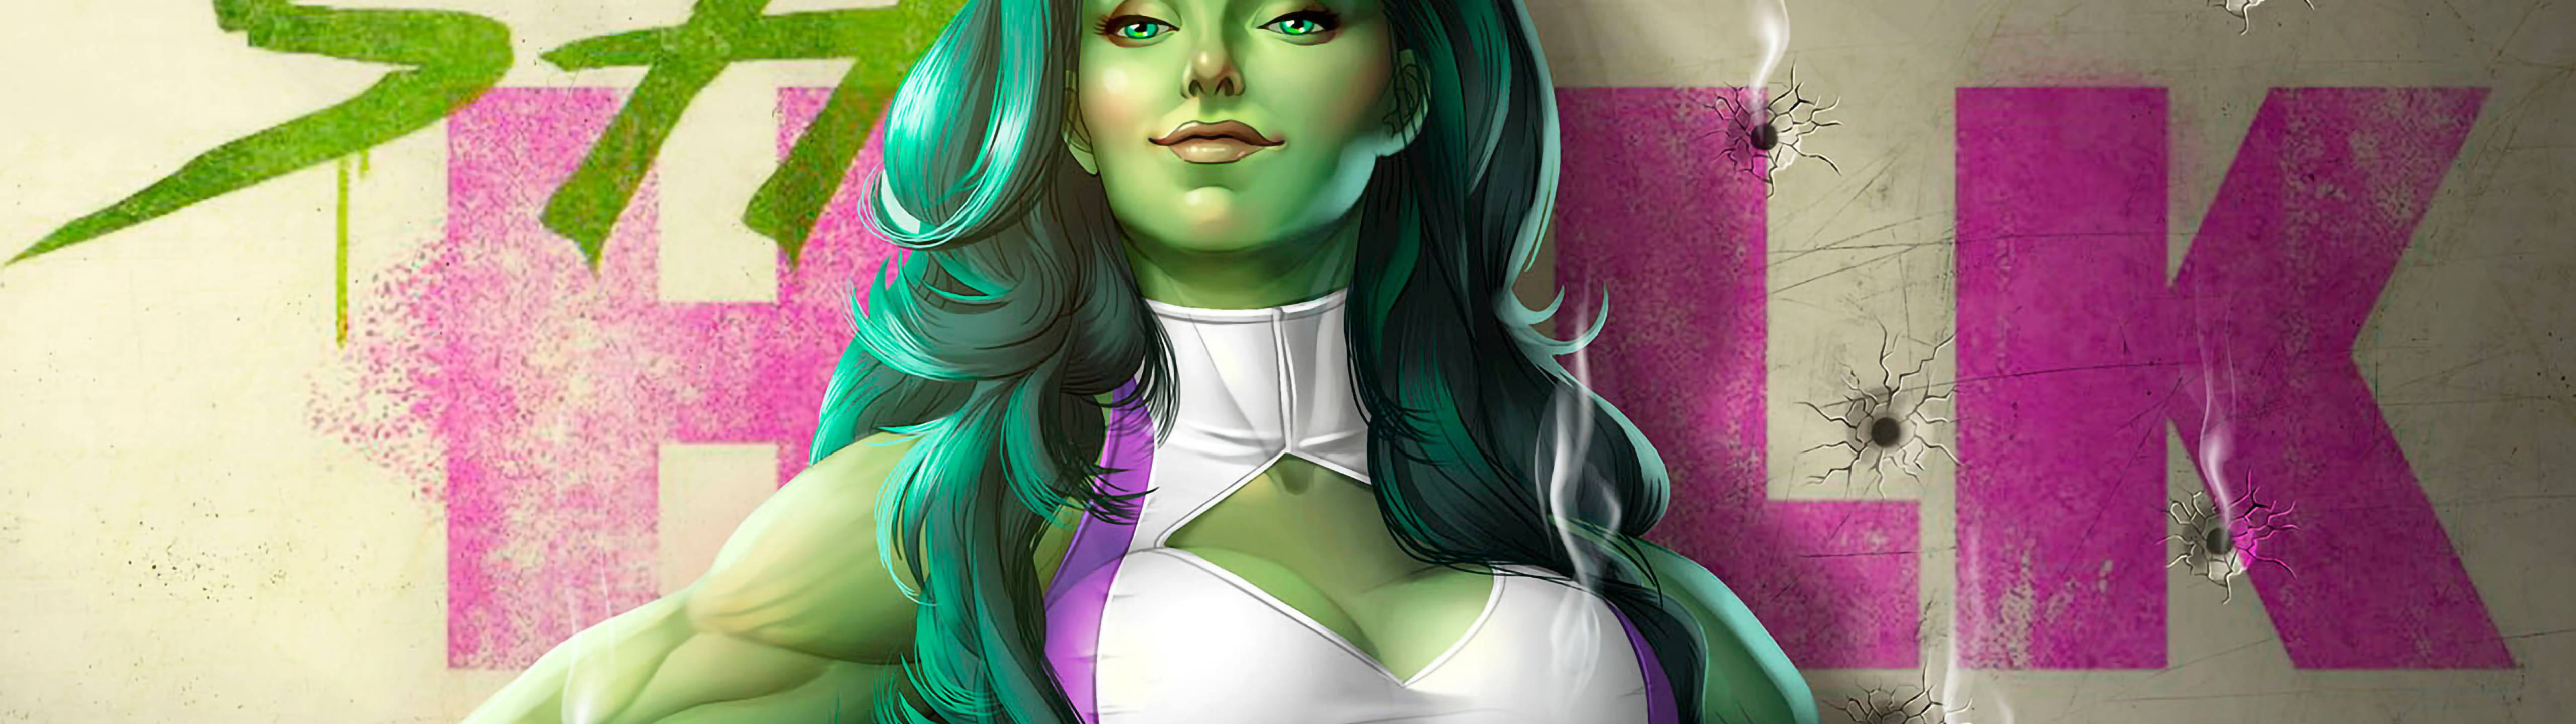 Marvel Hero She Hulk 5120 X 1440 Wallpaper